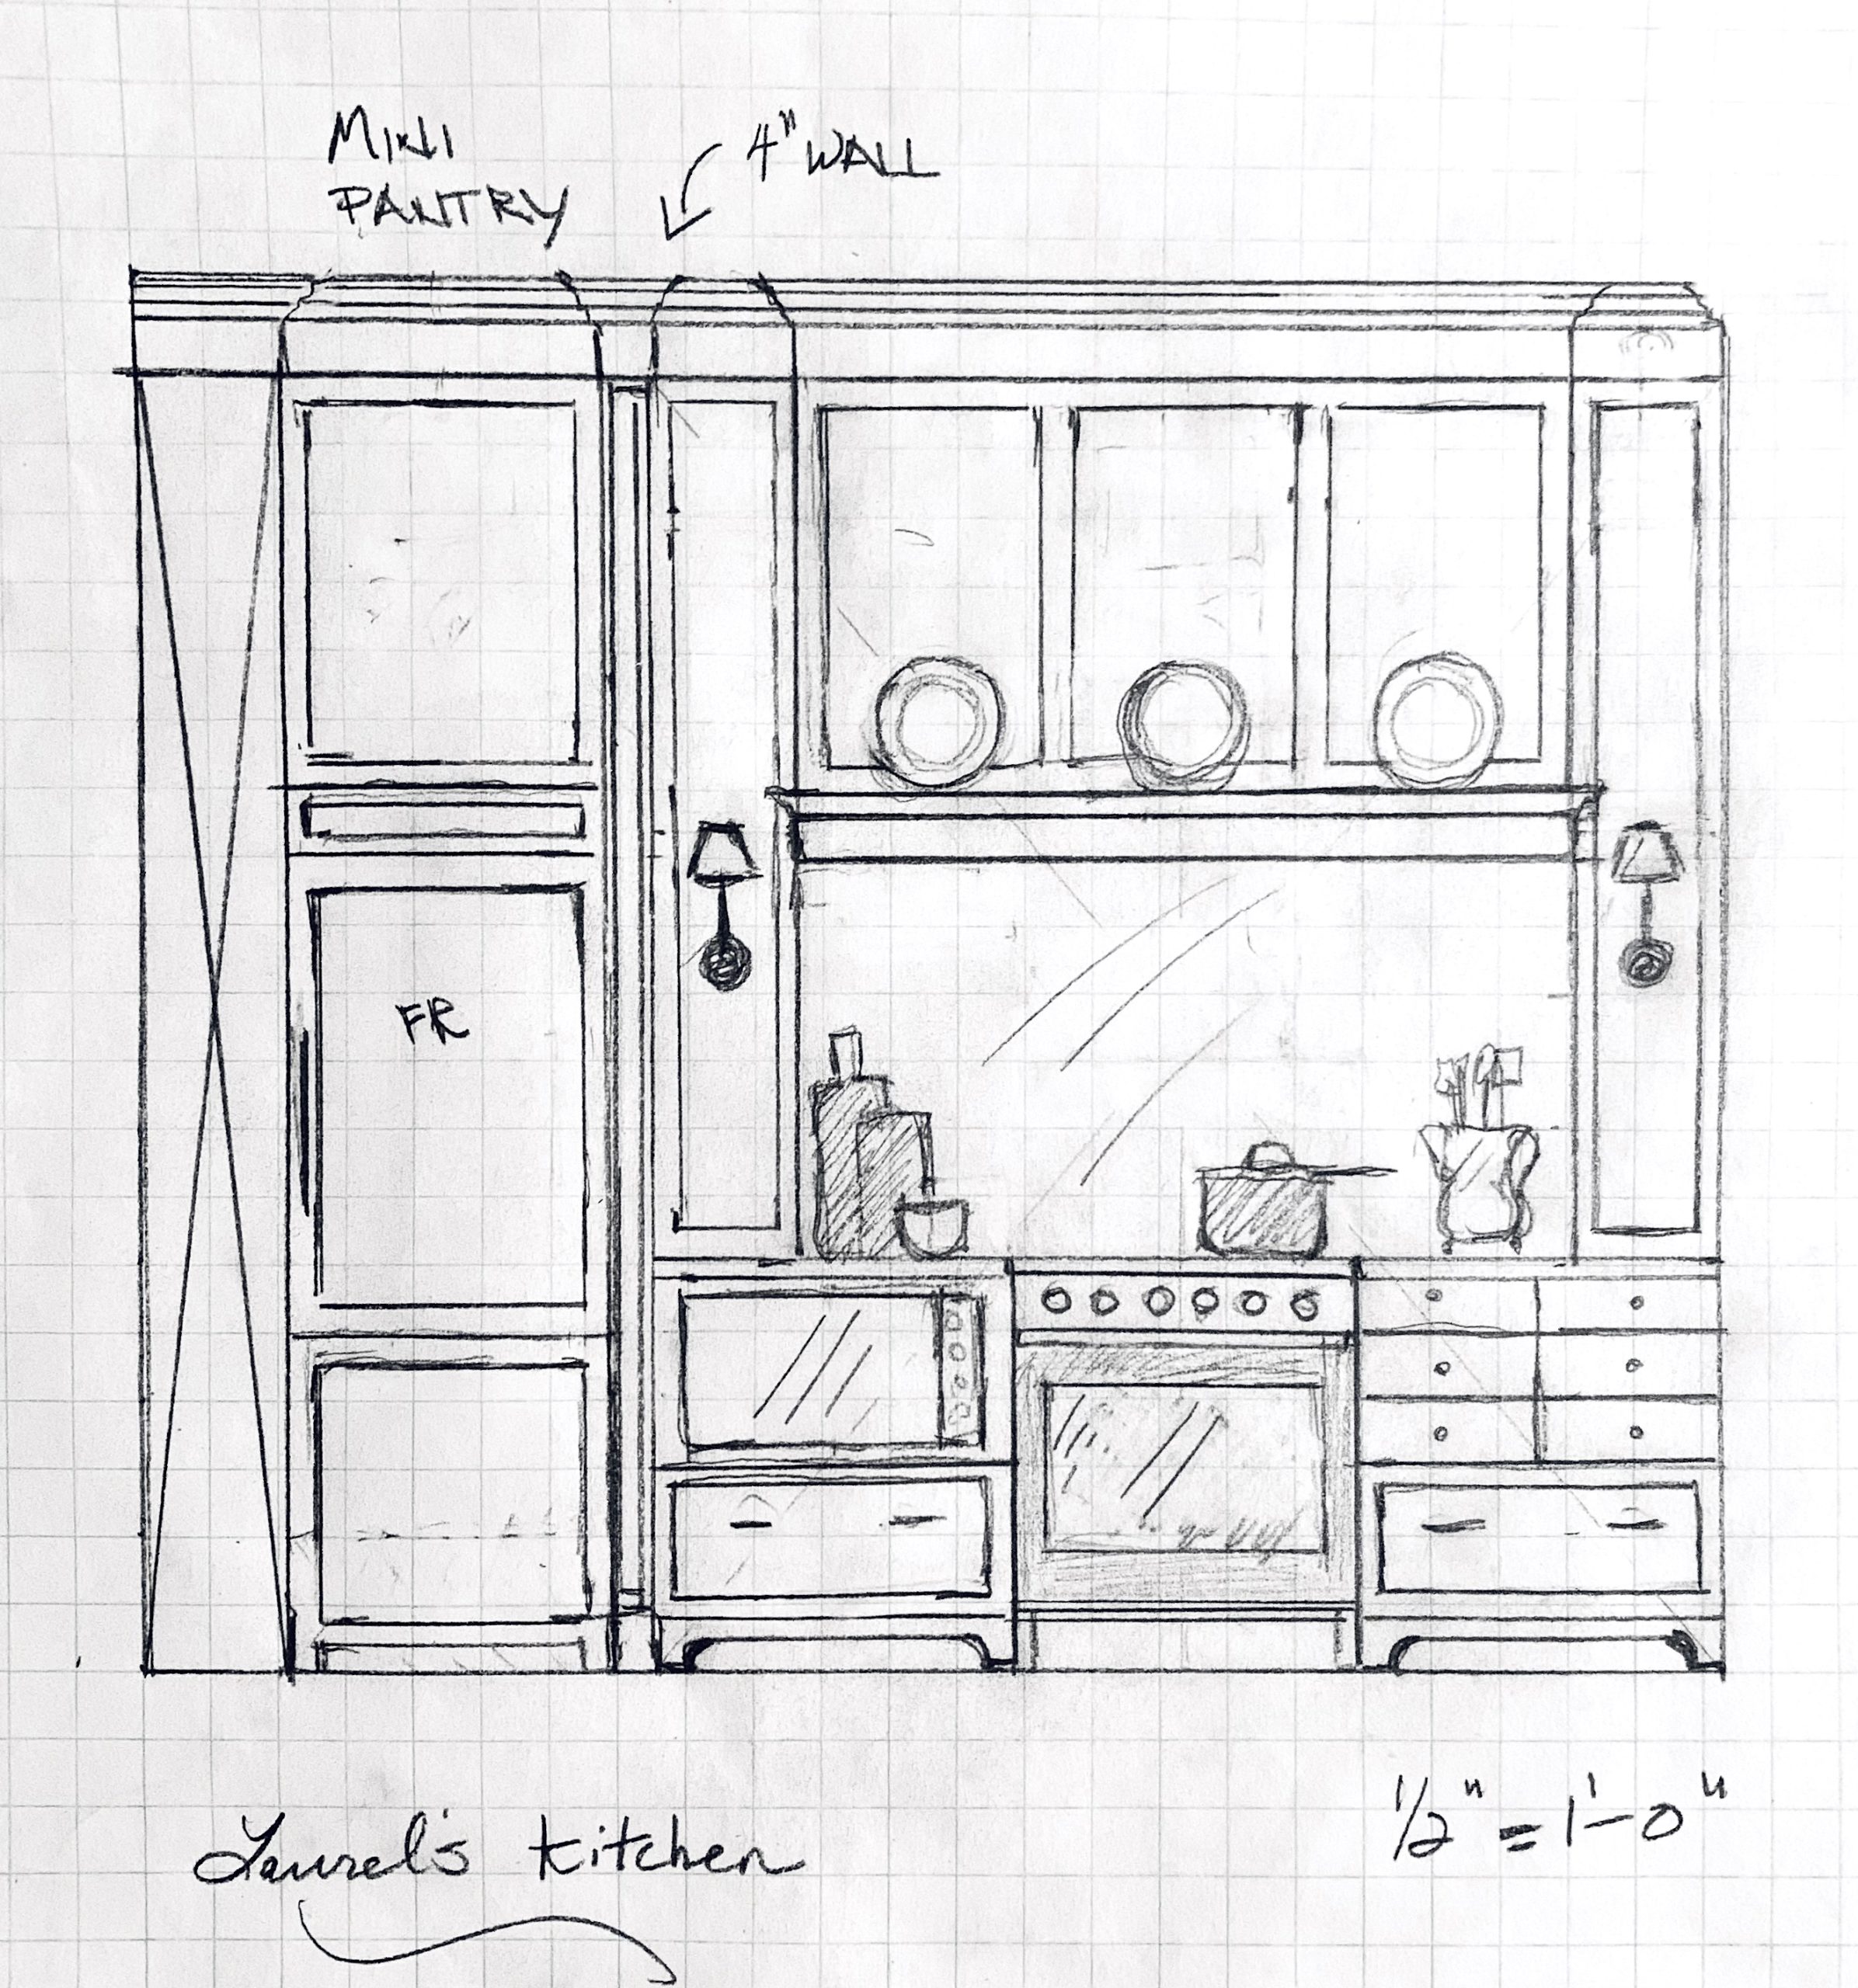 Brownstone kitchen design - range elevation